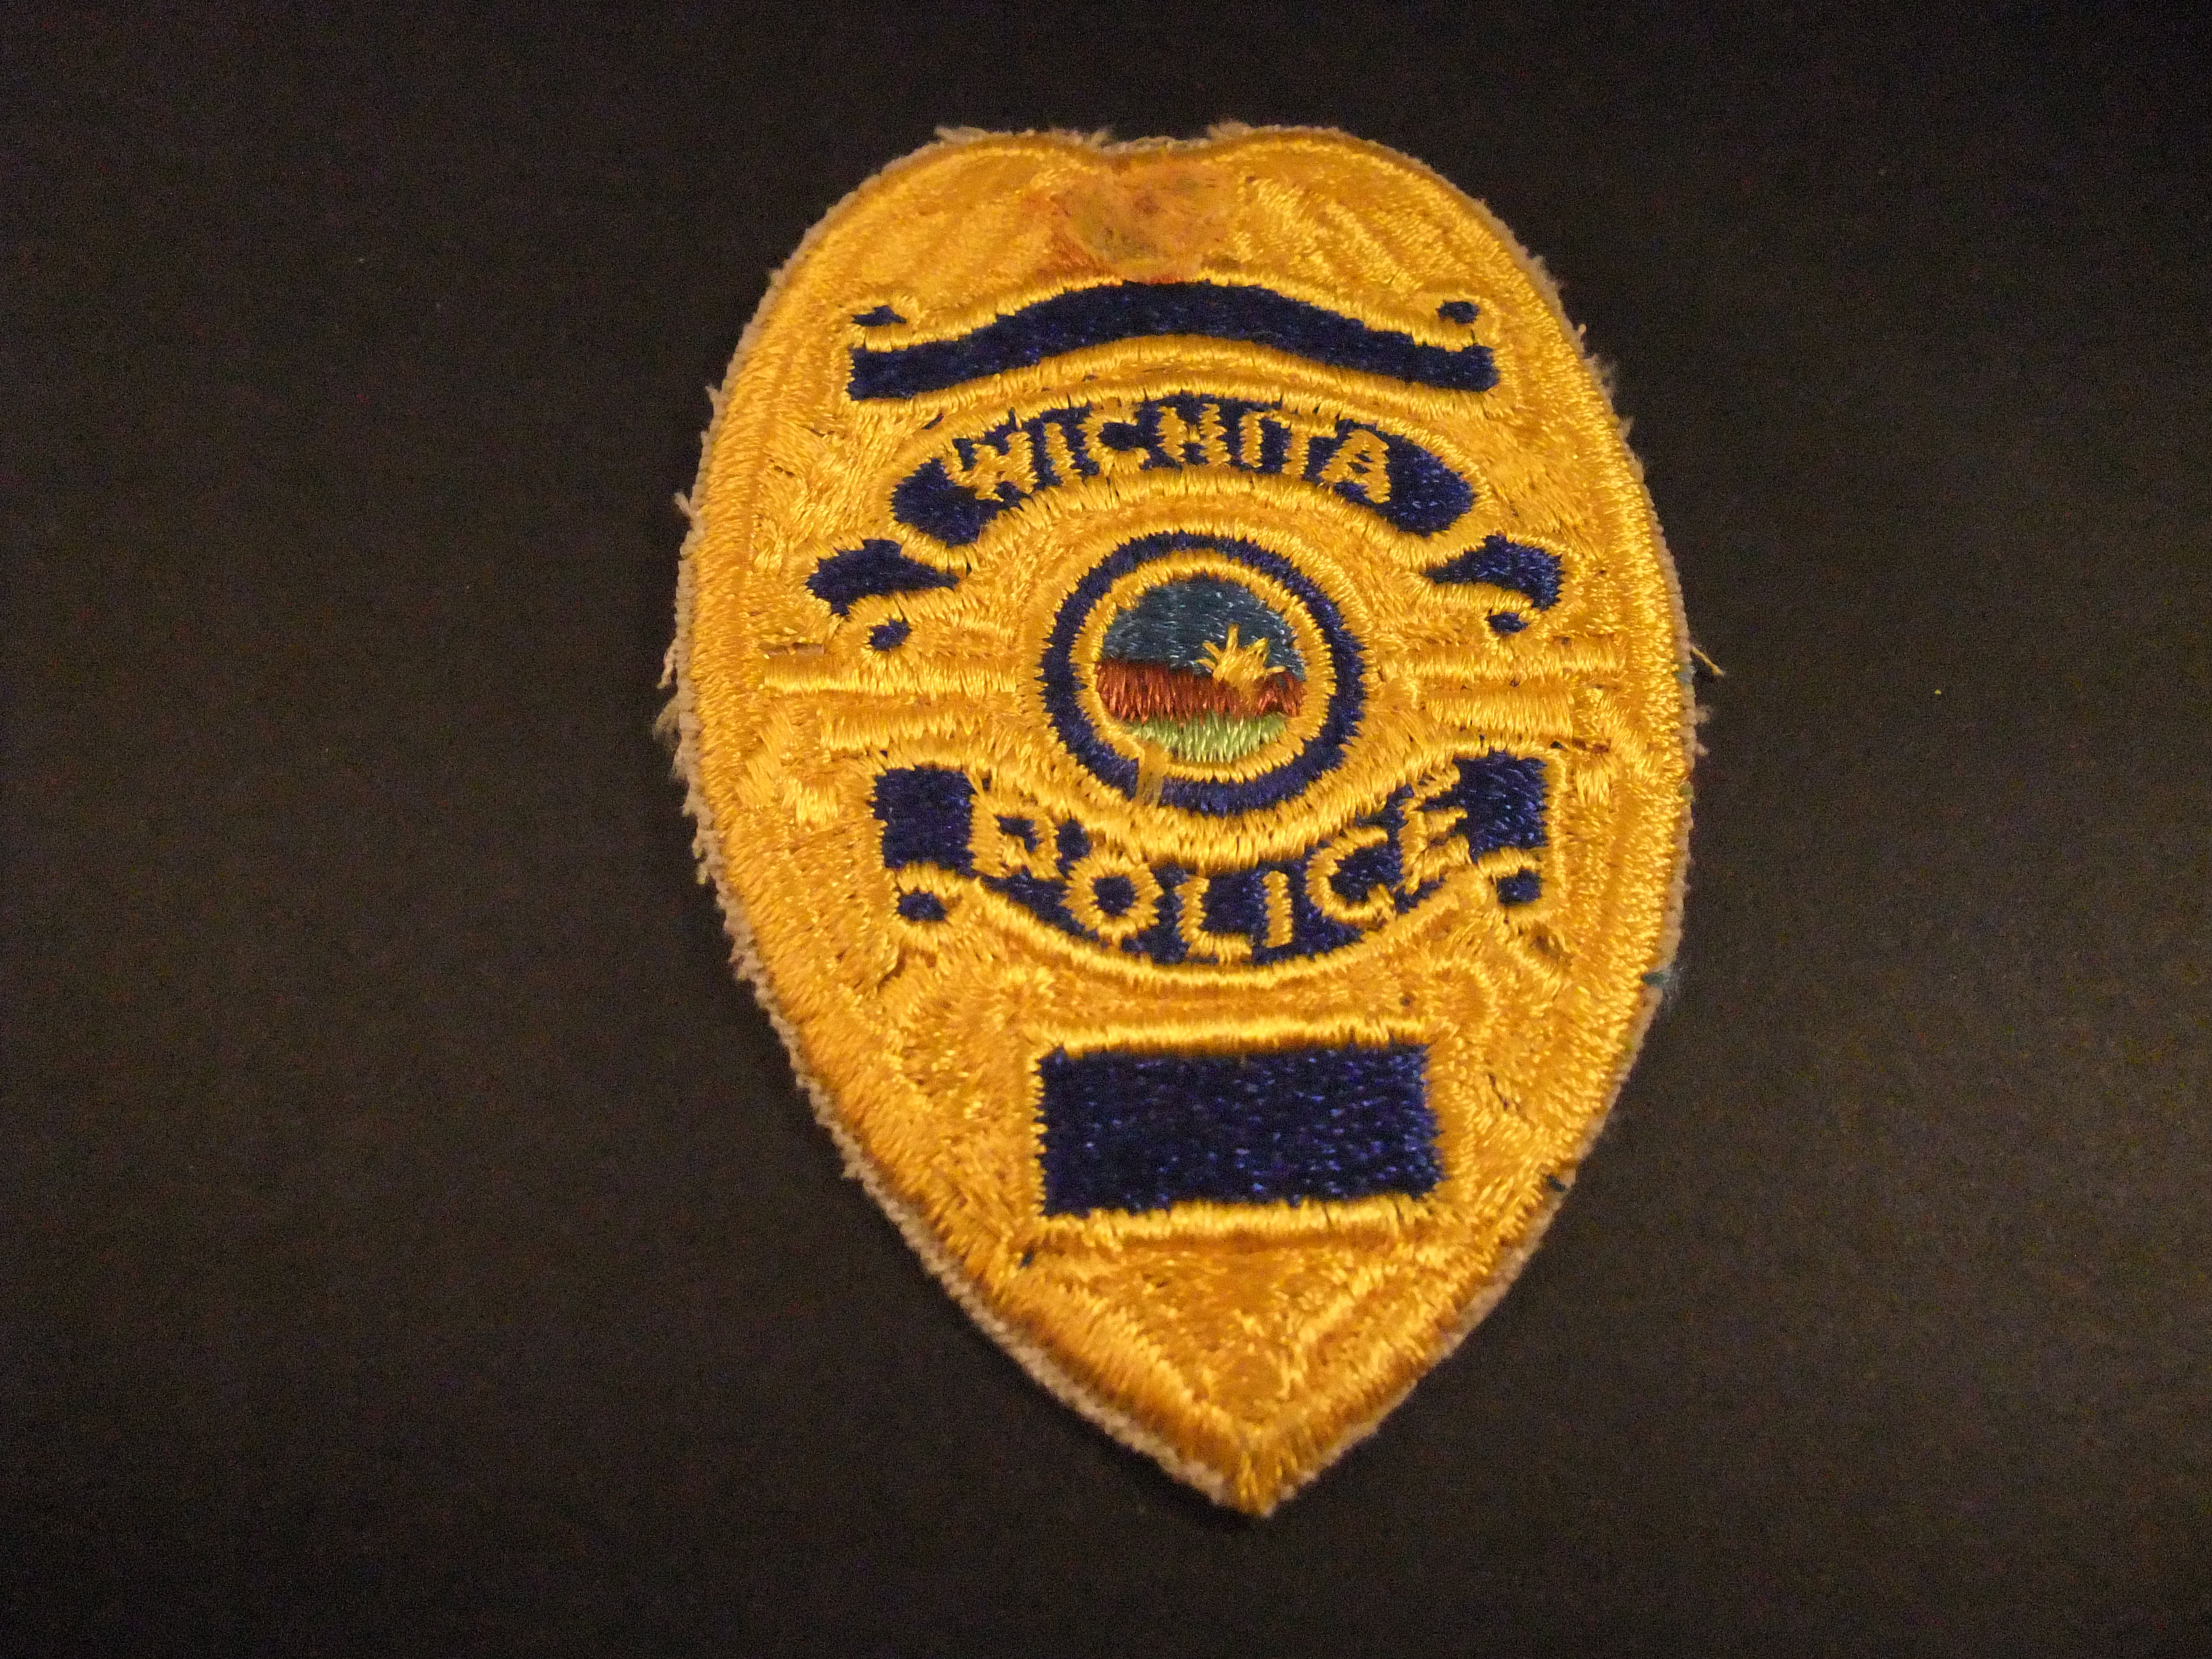 Wichita Police Department Kansas USA badge